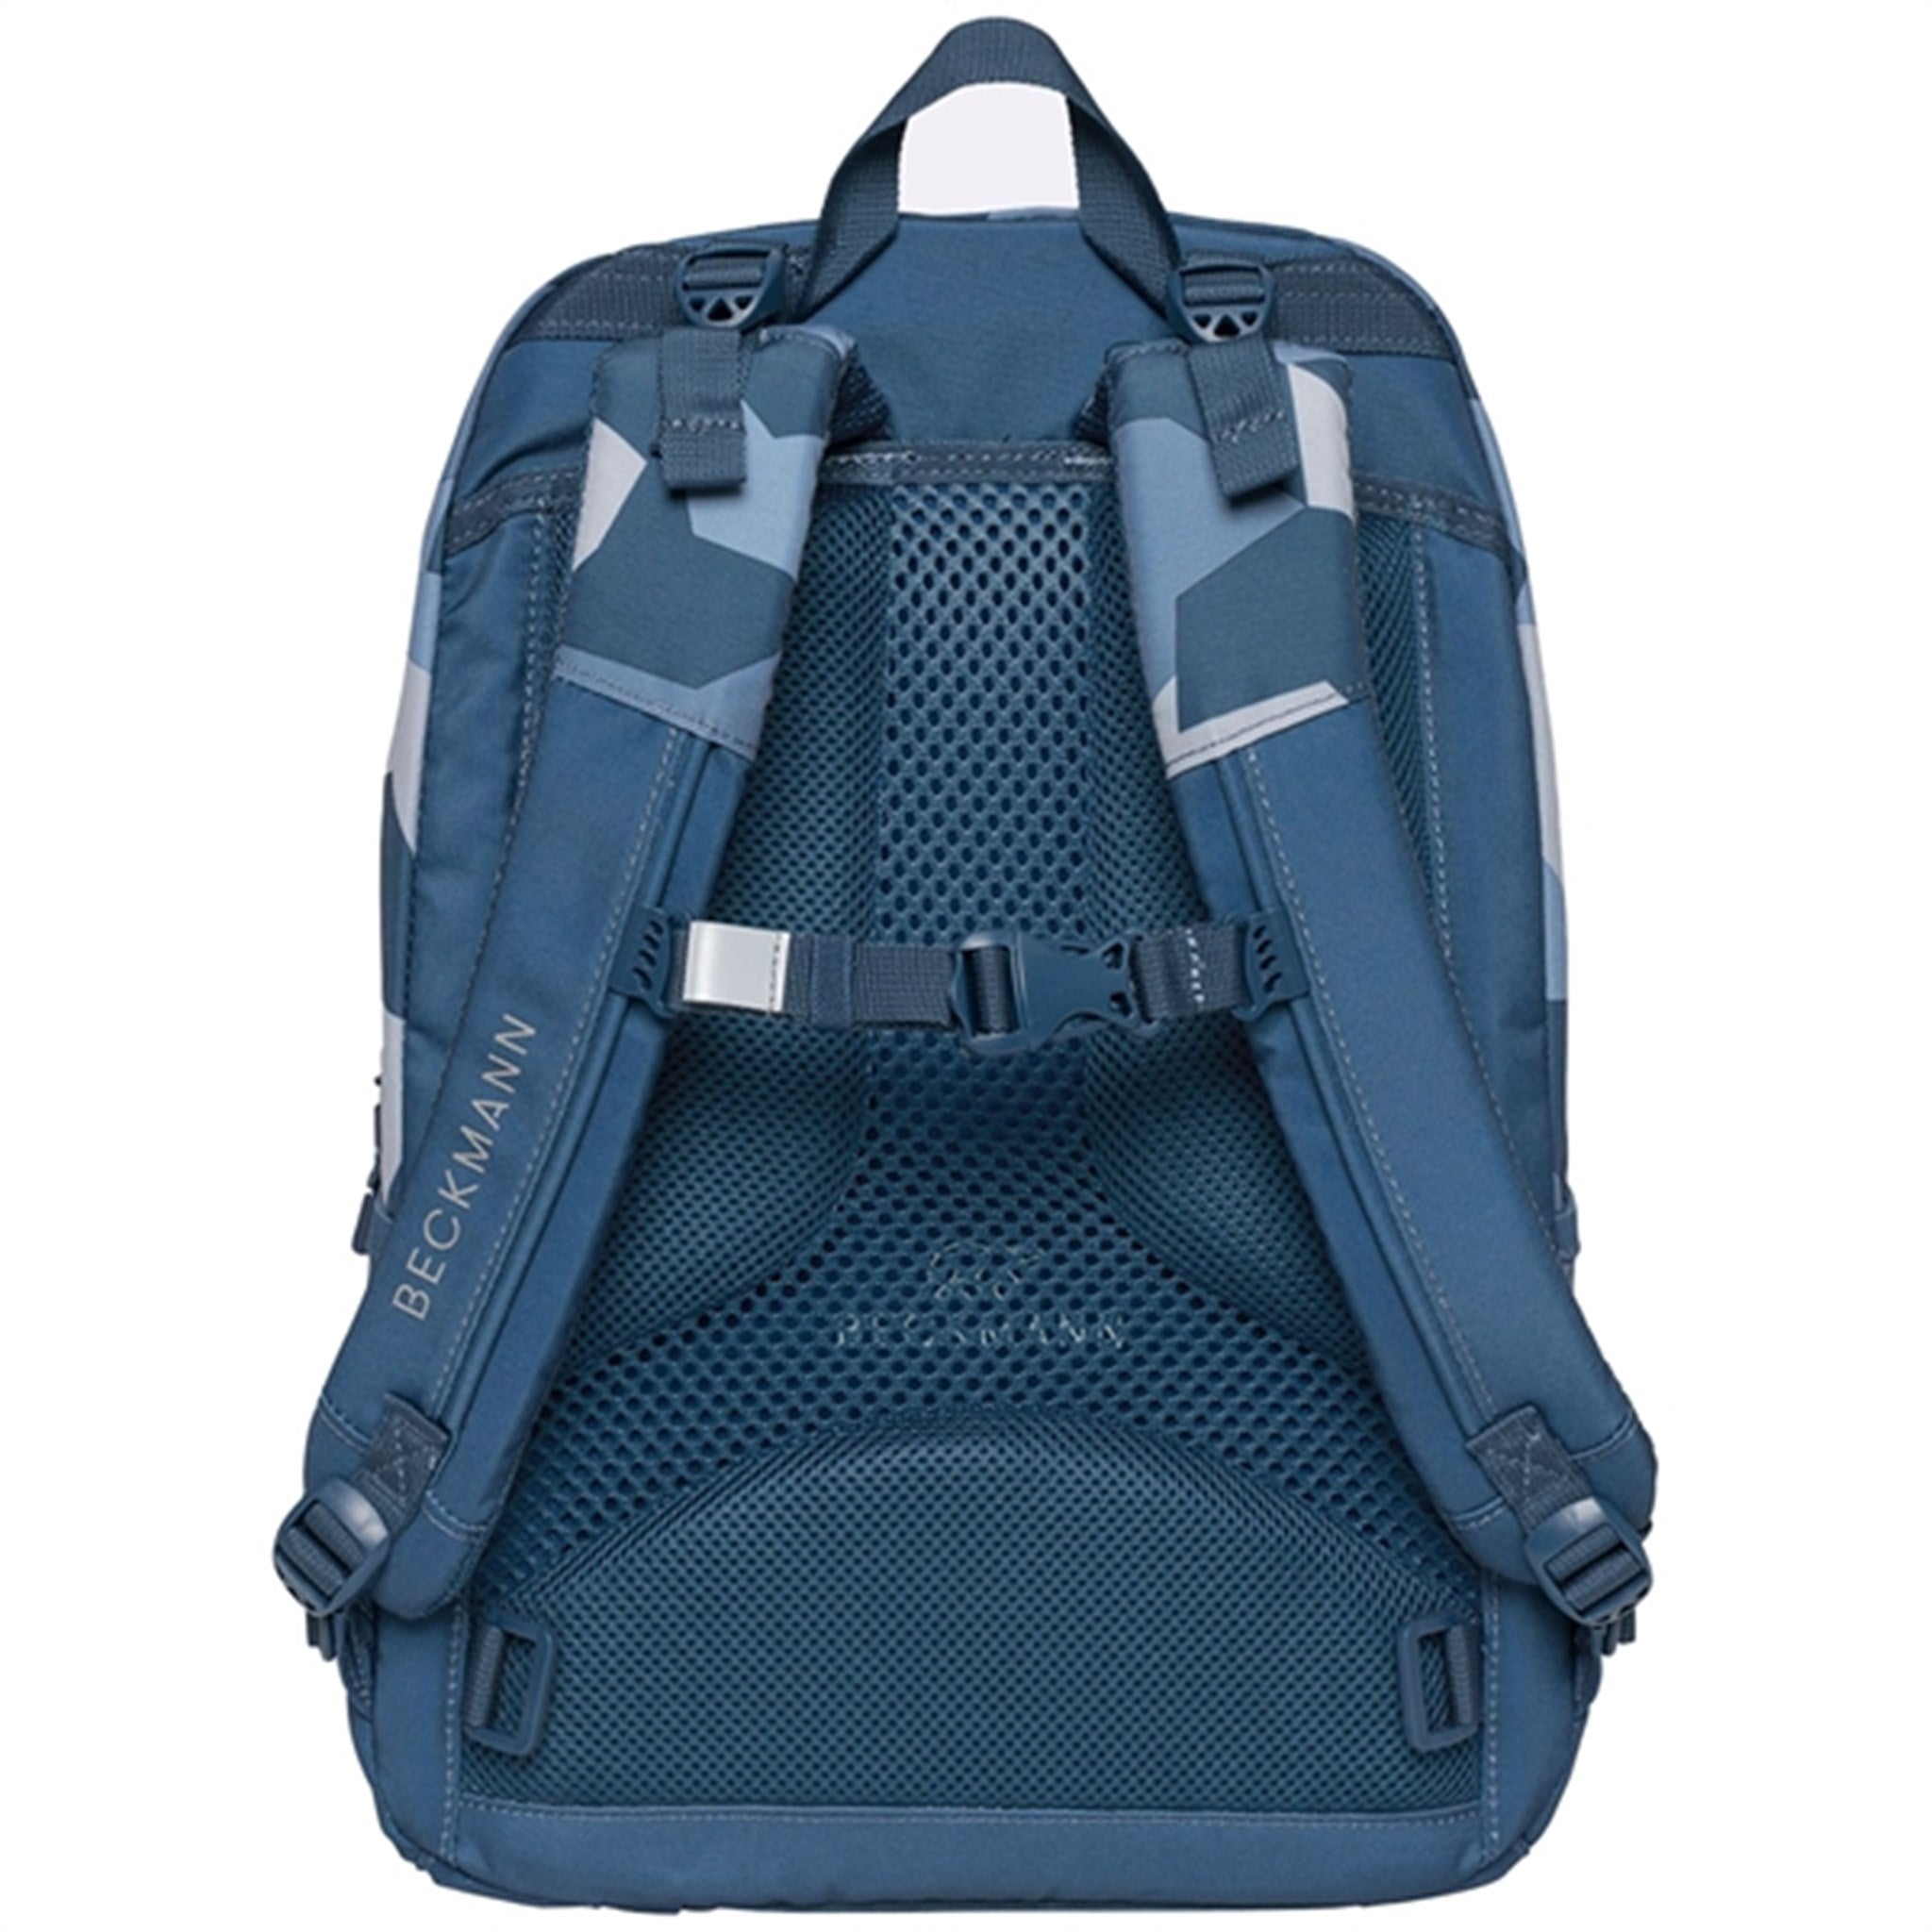 Beckmann Sport Junior Backpack Blue Camo 6